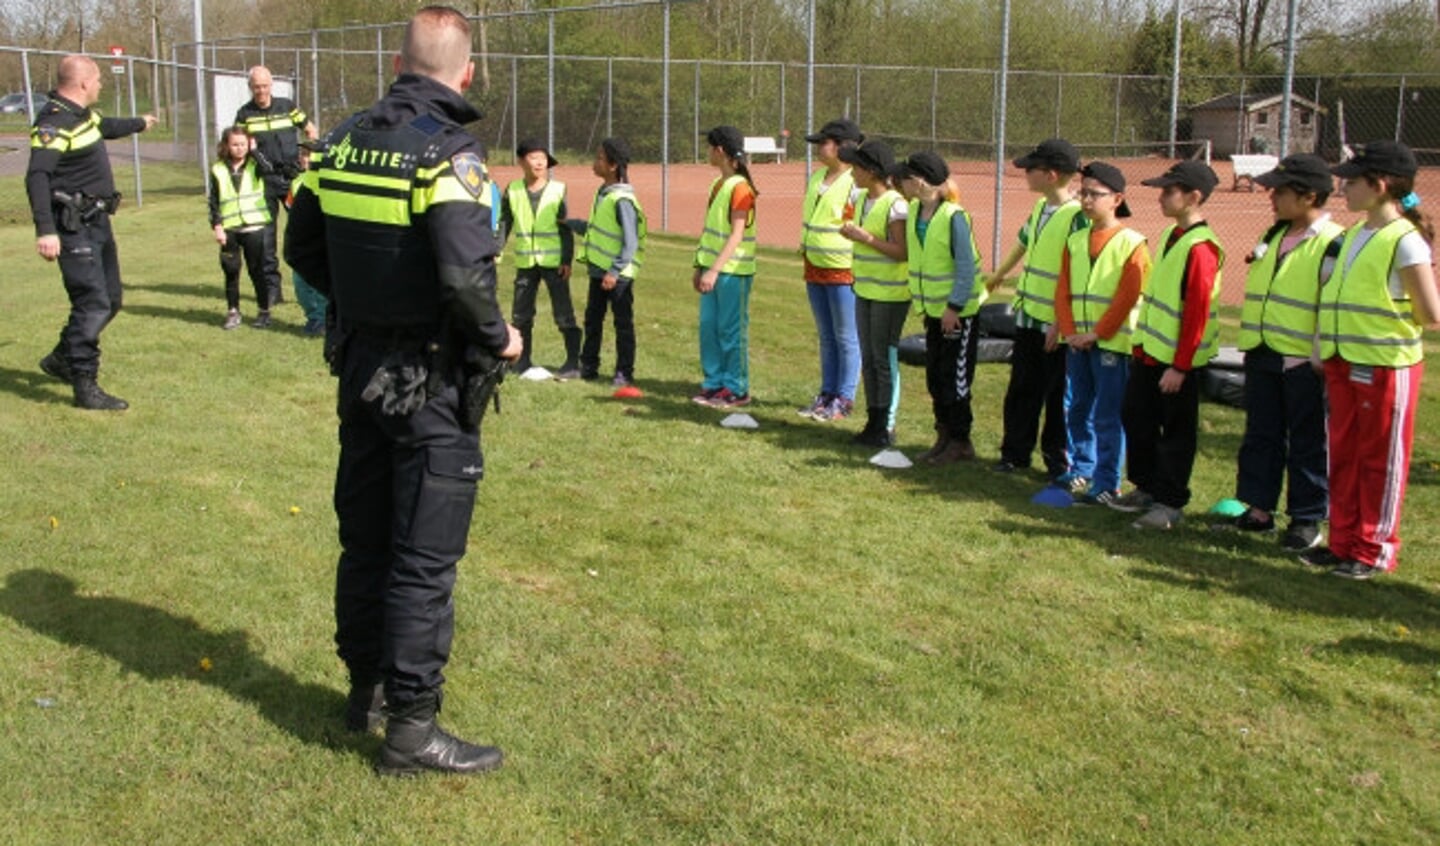 Politiekids is een samenwerking van de politie Zwolle, Travers Welzijn, de scholen in Zwolle-Noord en -West, Sportservice, Doomijn en atletiekvereniging AV PEC 1910.